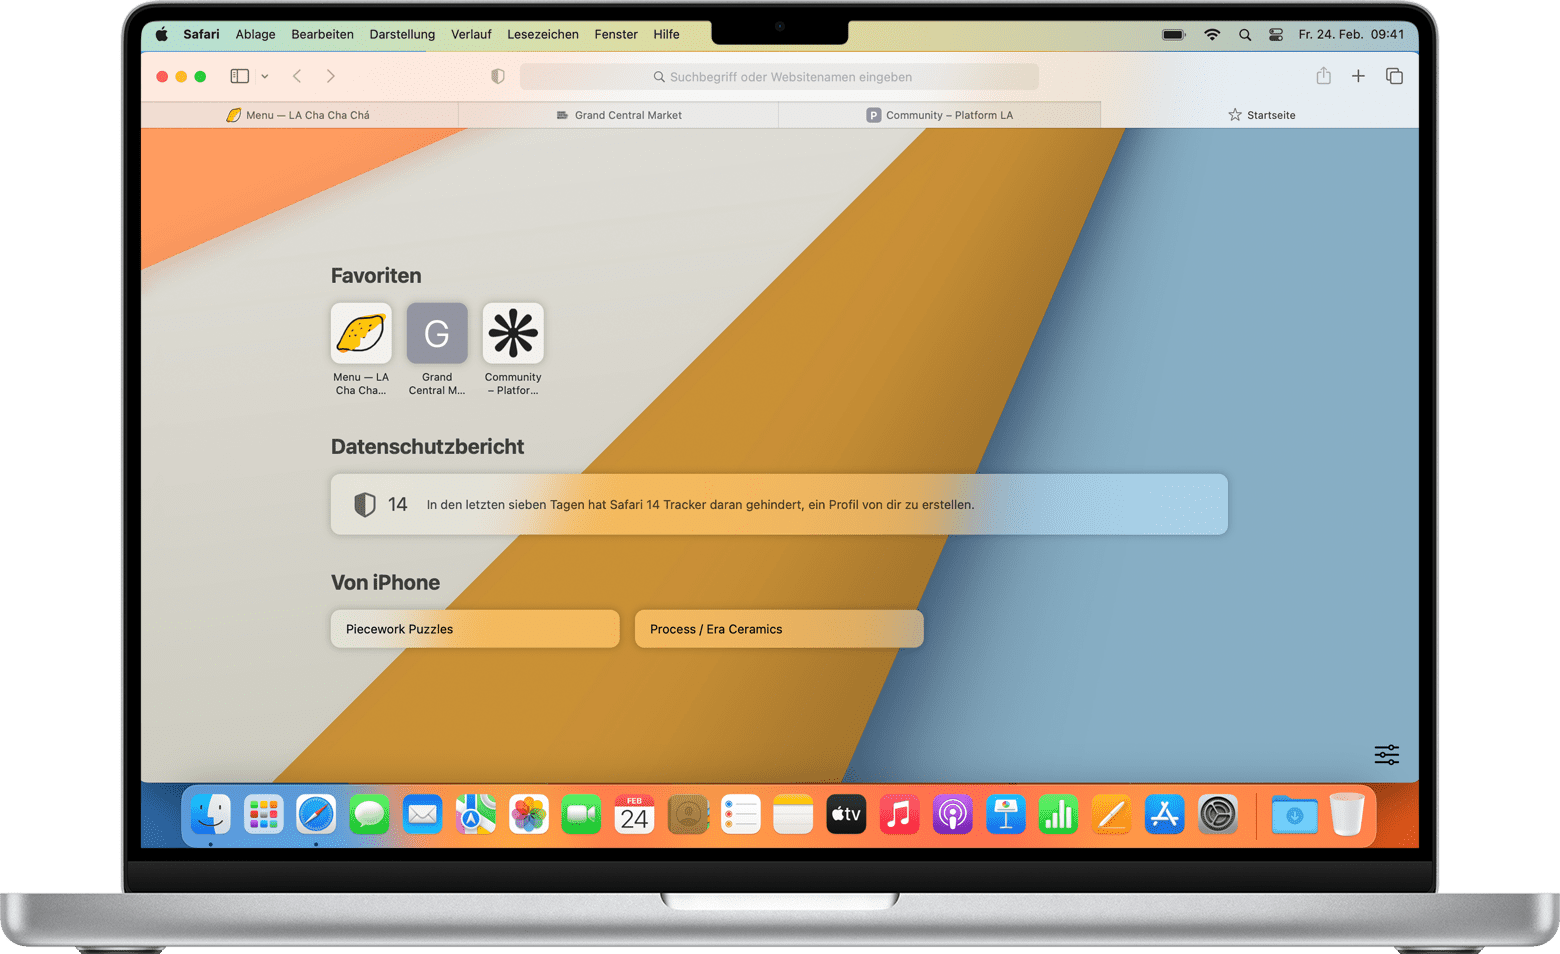 Abbildung eines MacBook-Bildschirms. Unter "Favoriten" und "Datenschutzbericht" befindet sich der Bereich "Von Johns iPhone" mit zwei geöffneten Tabs.